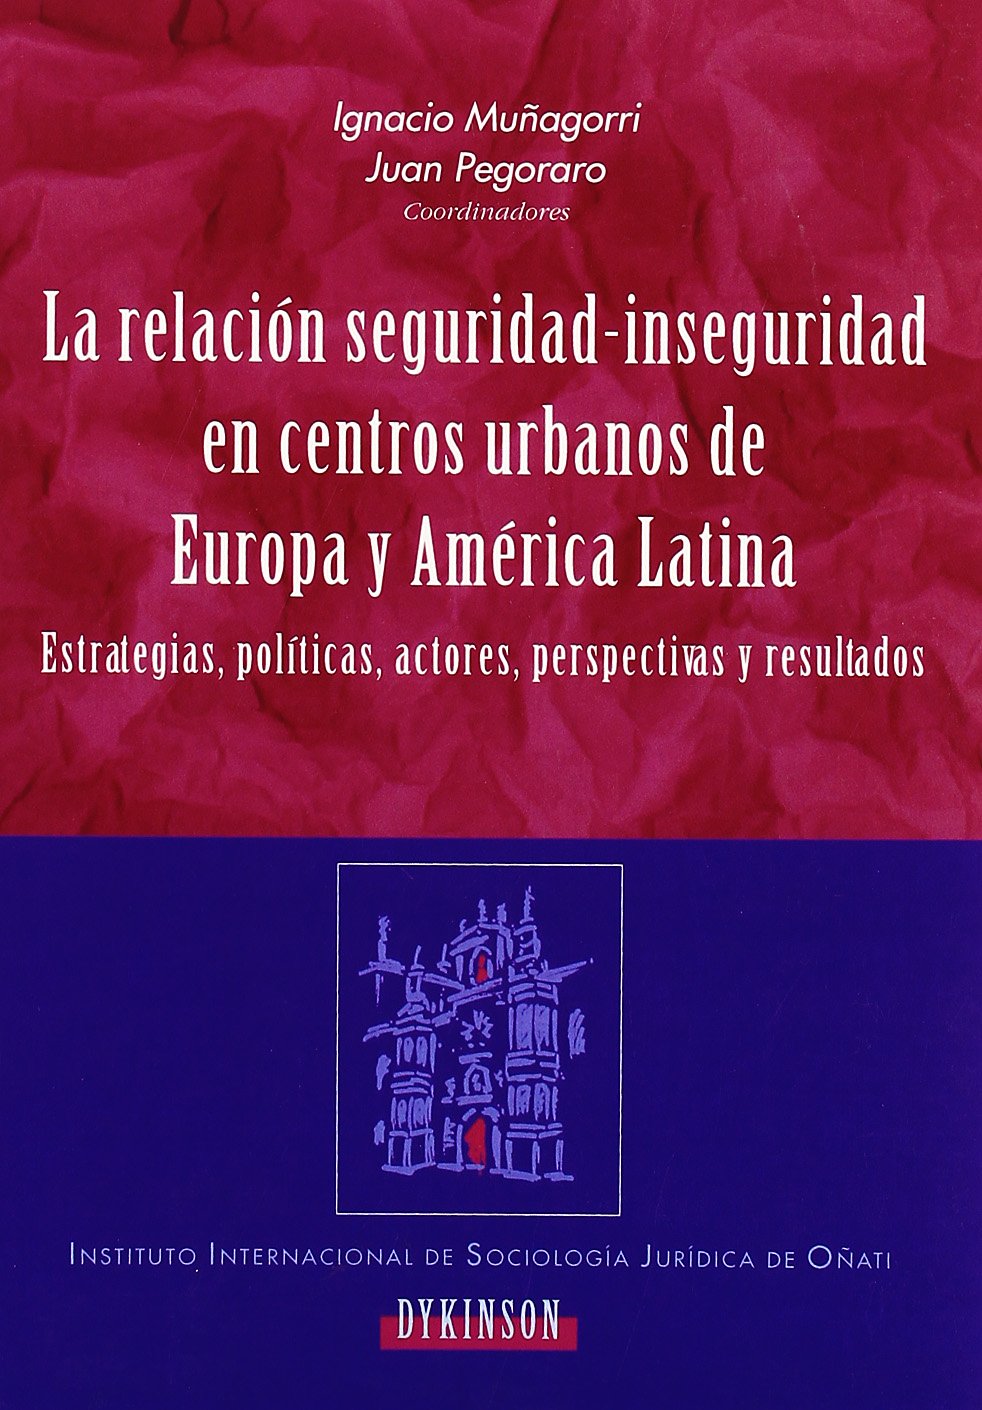 Imagen de portada del libro La relación seguridad-inseguridad en centros urbanos de Europa y América Latina